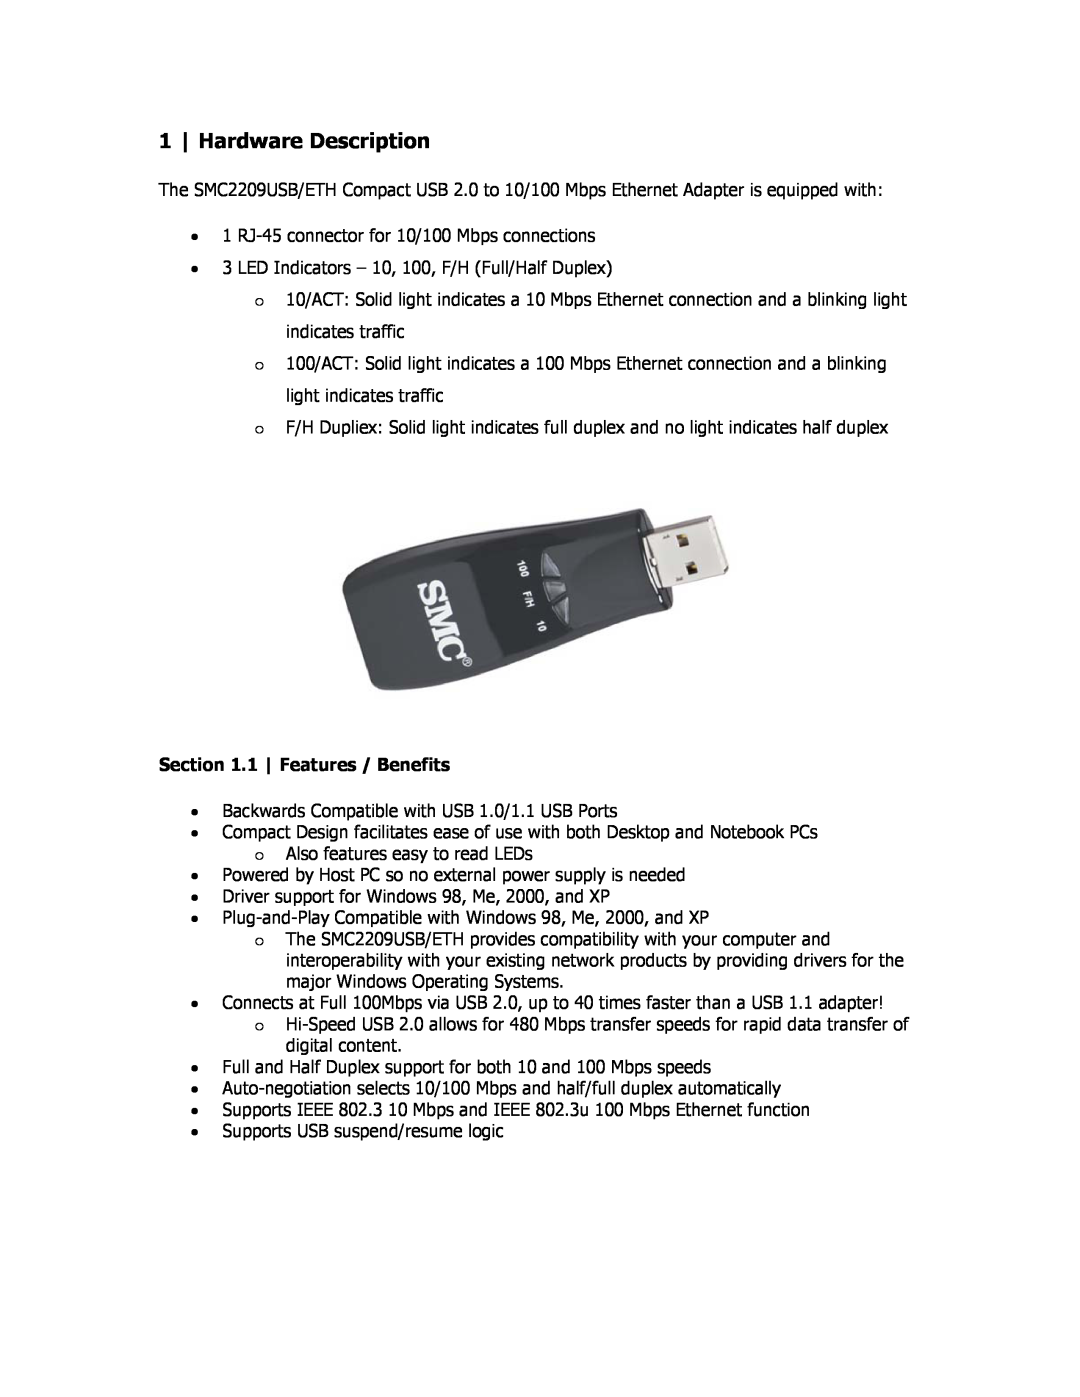 SMC Networks SMC2209USB/ETH manual Hardware Description, 1 Features / Benefits 